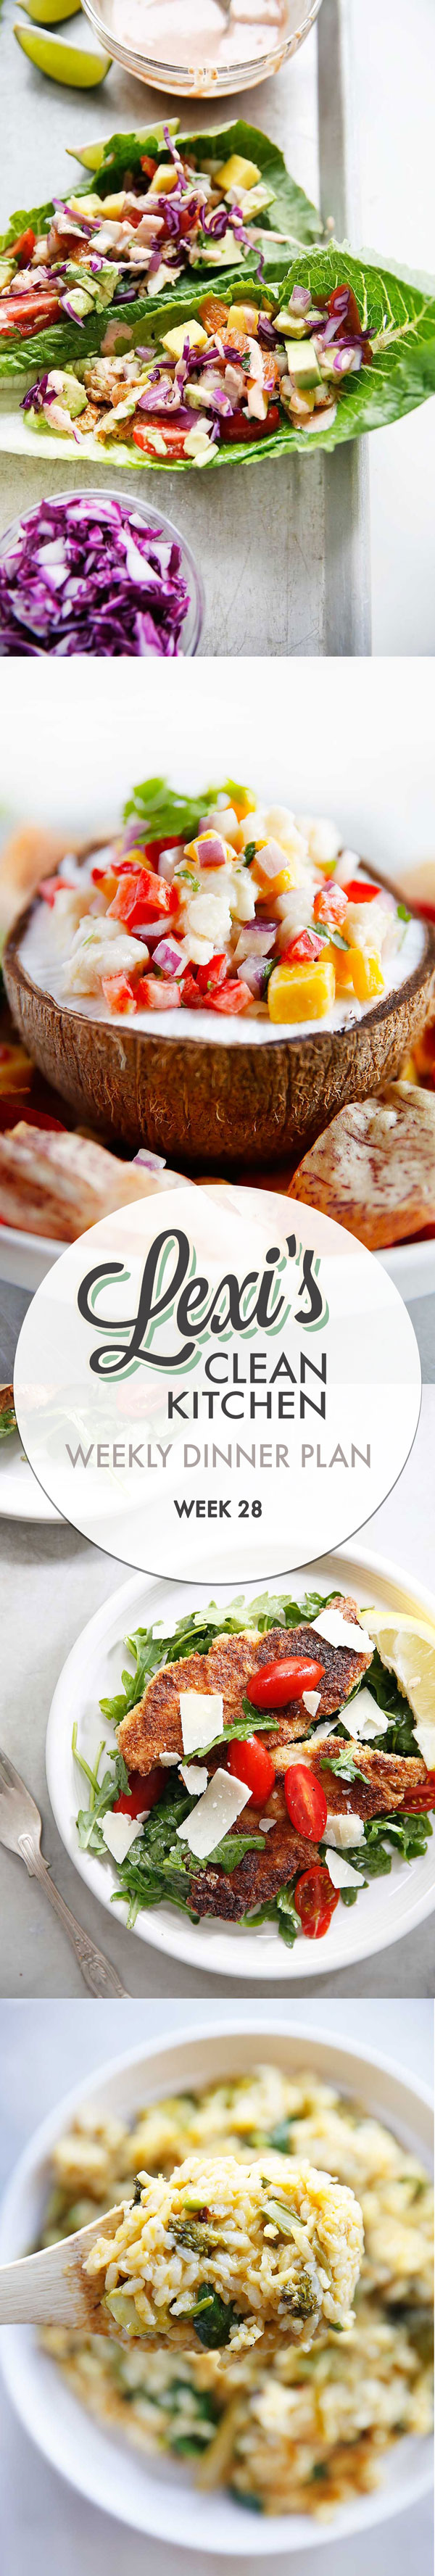 lexi’s weekly dinner plan week 28